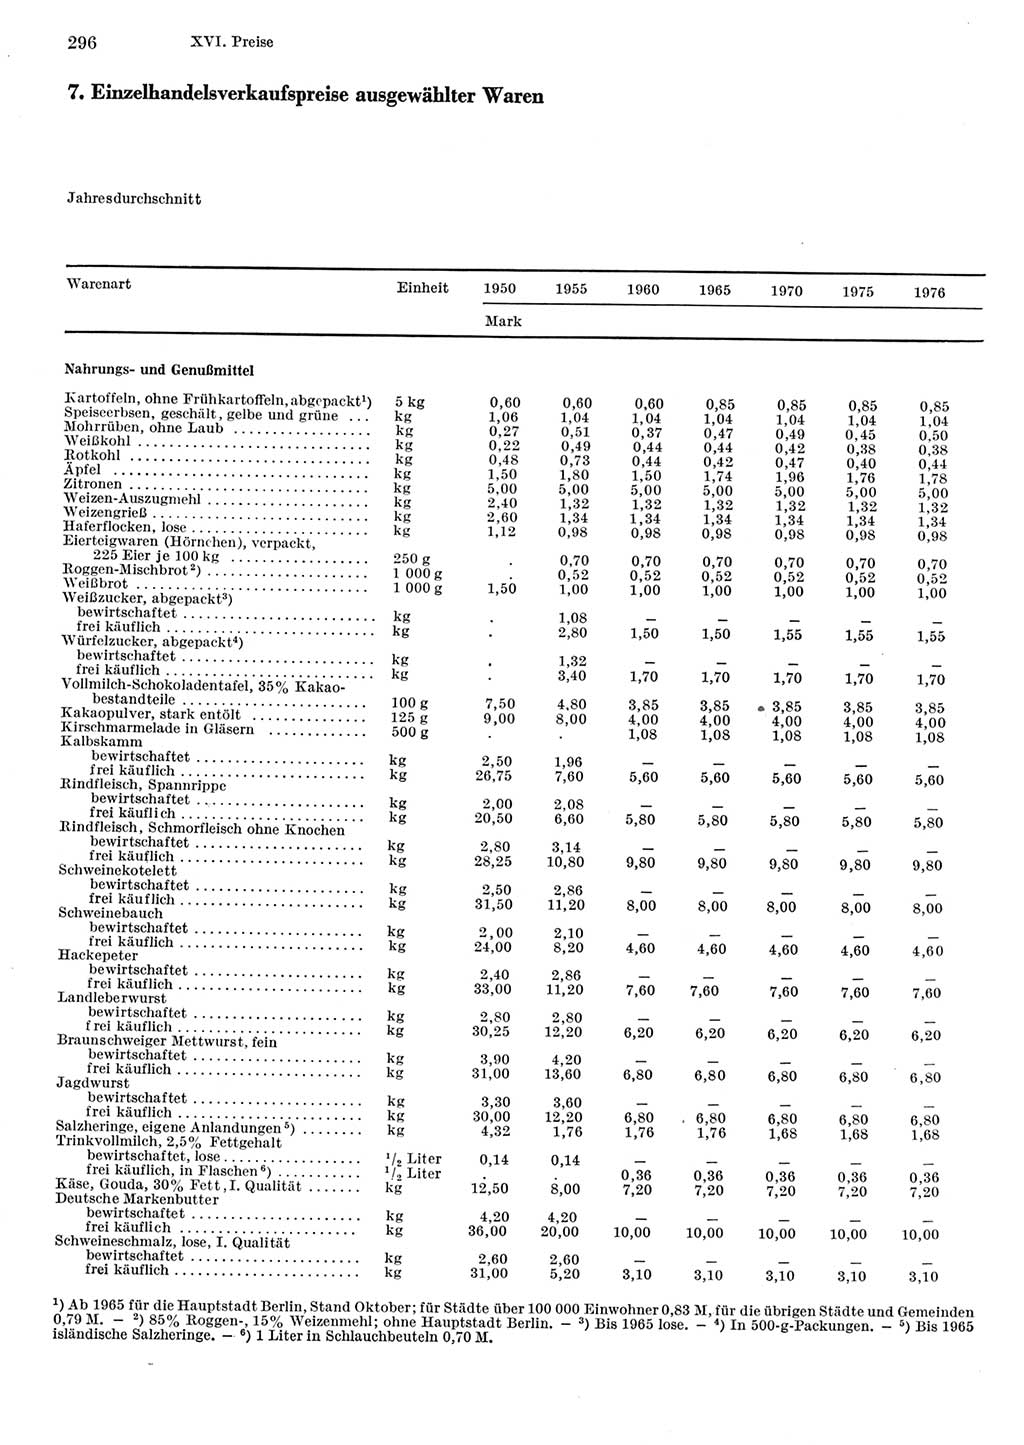 Statistisches Jahrbuch der Deutschen Demokratischen Republik (DDR) 1977, Seite 296 (Stat. Jb. DDR 1977, S. 296)